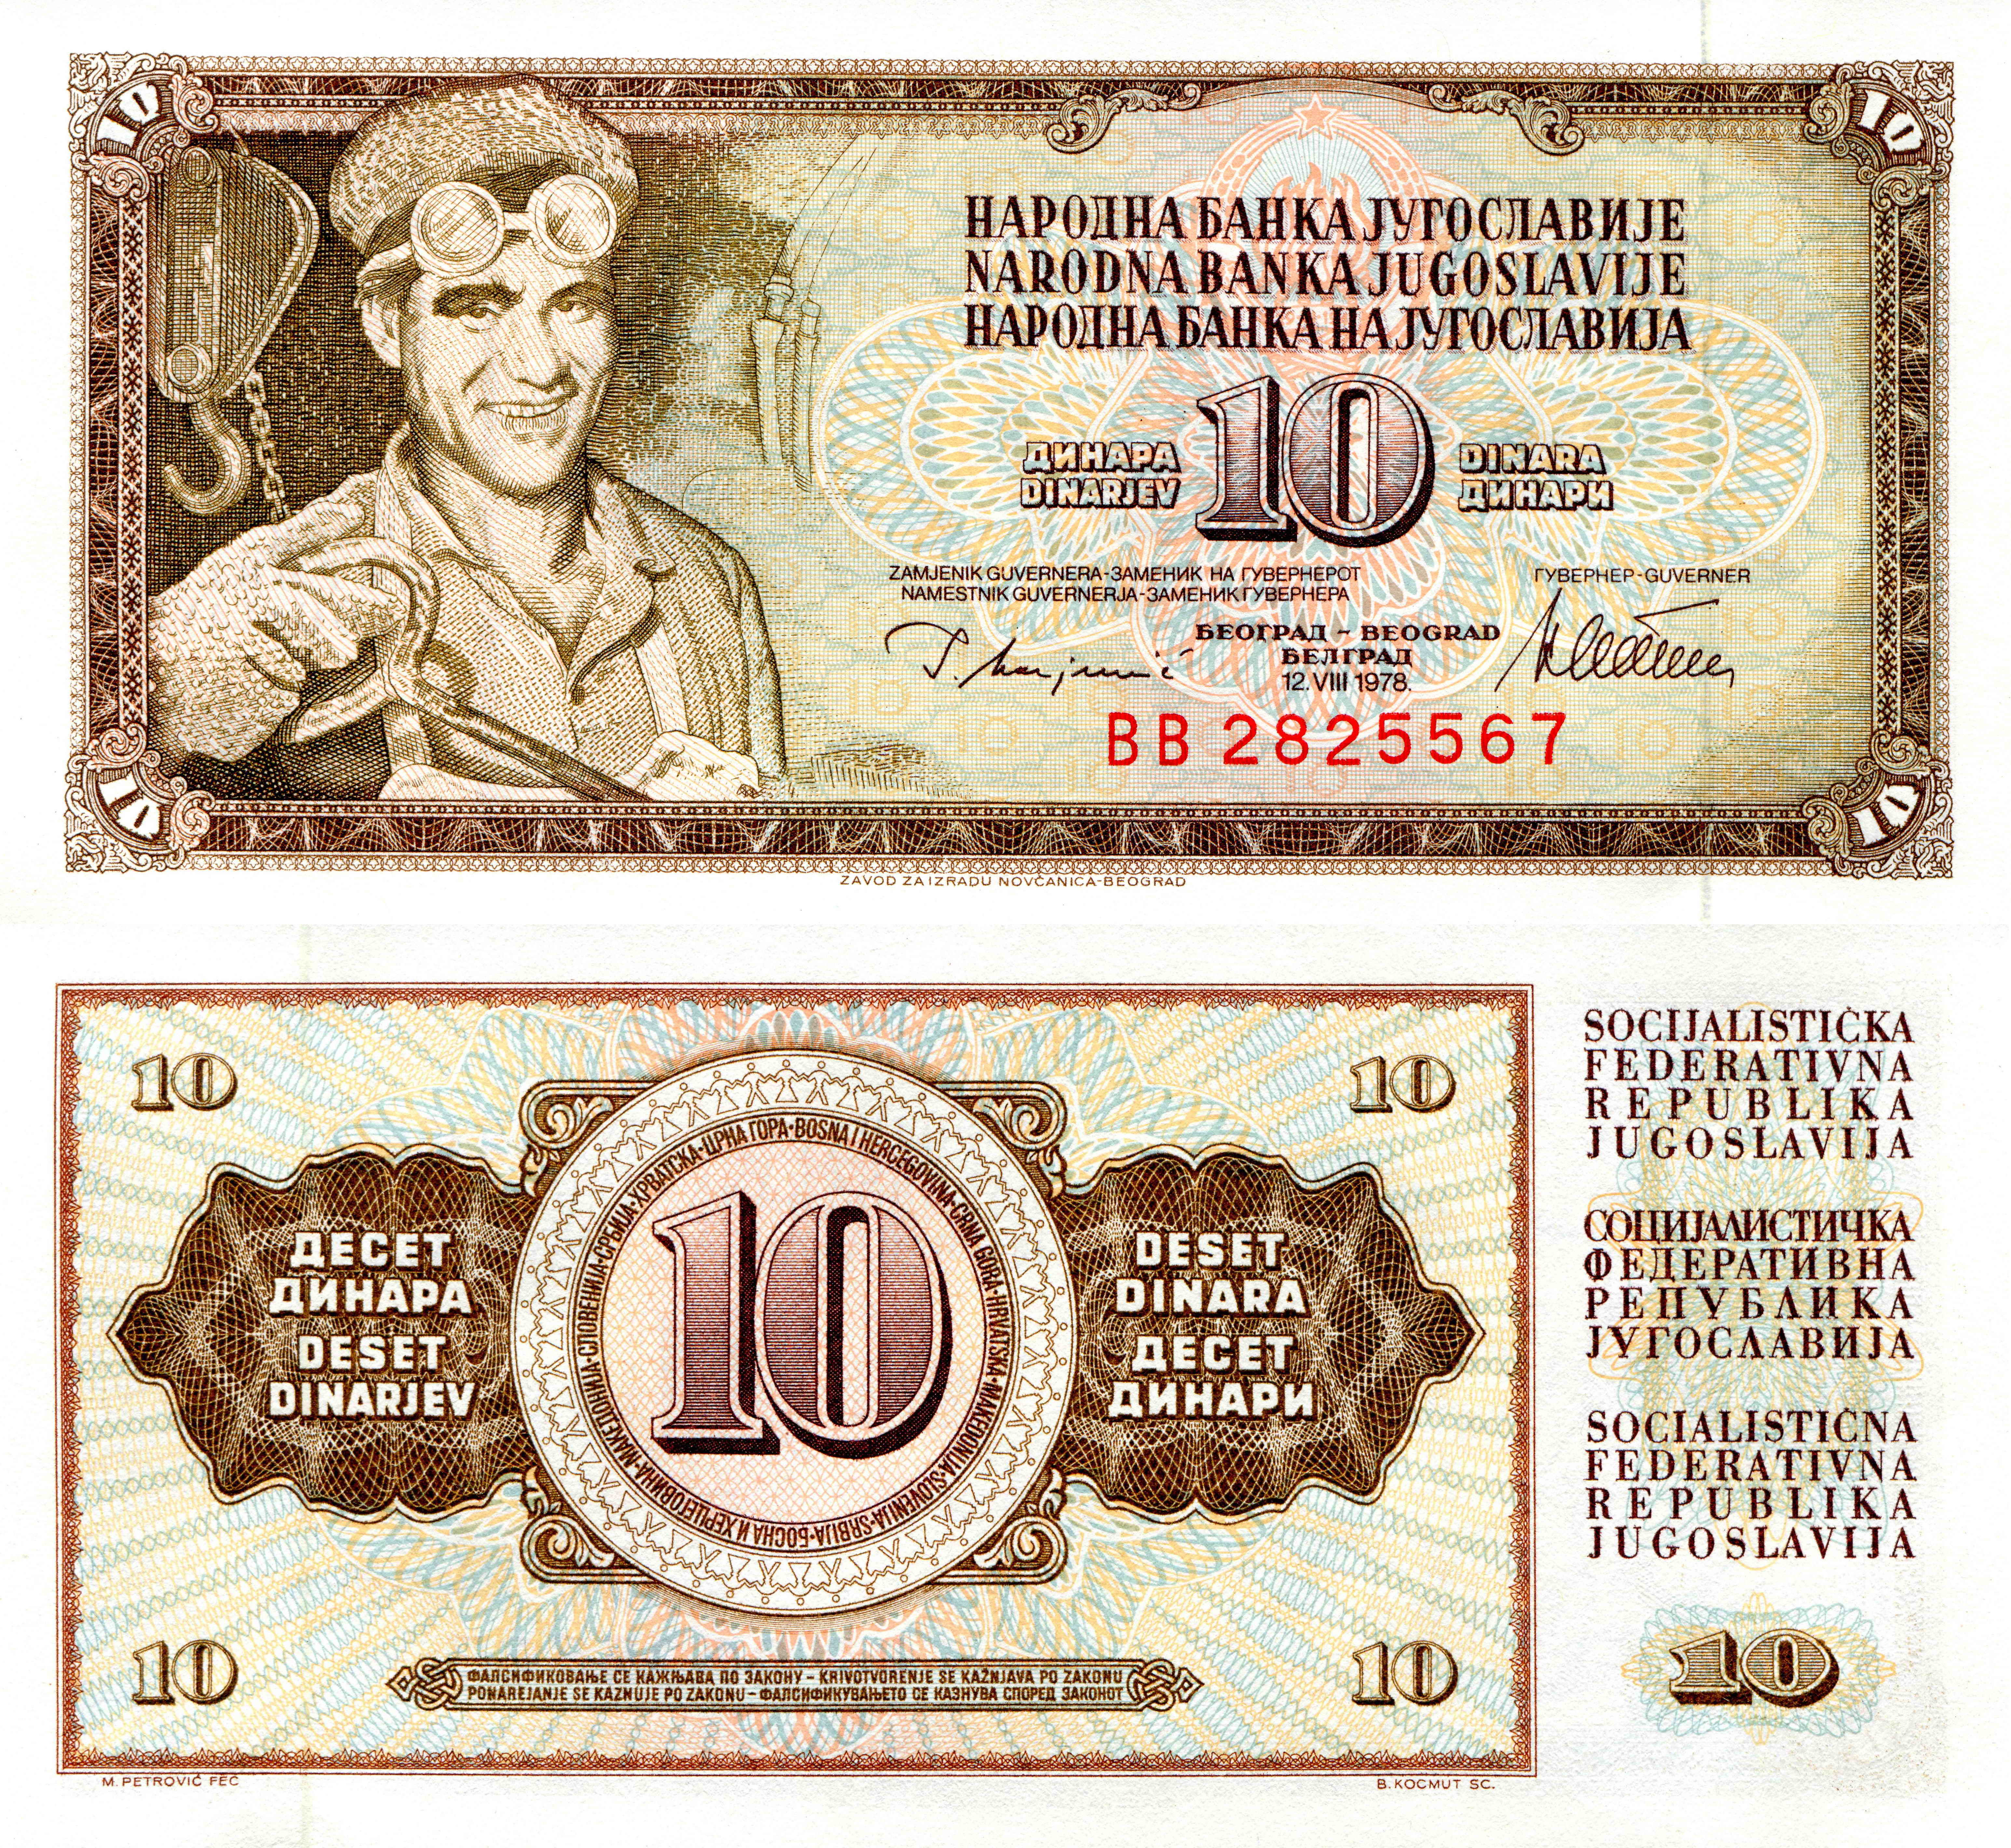 Wallpaper Banknotes 10 dinar Yugoslavia Money 6180x5680